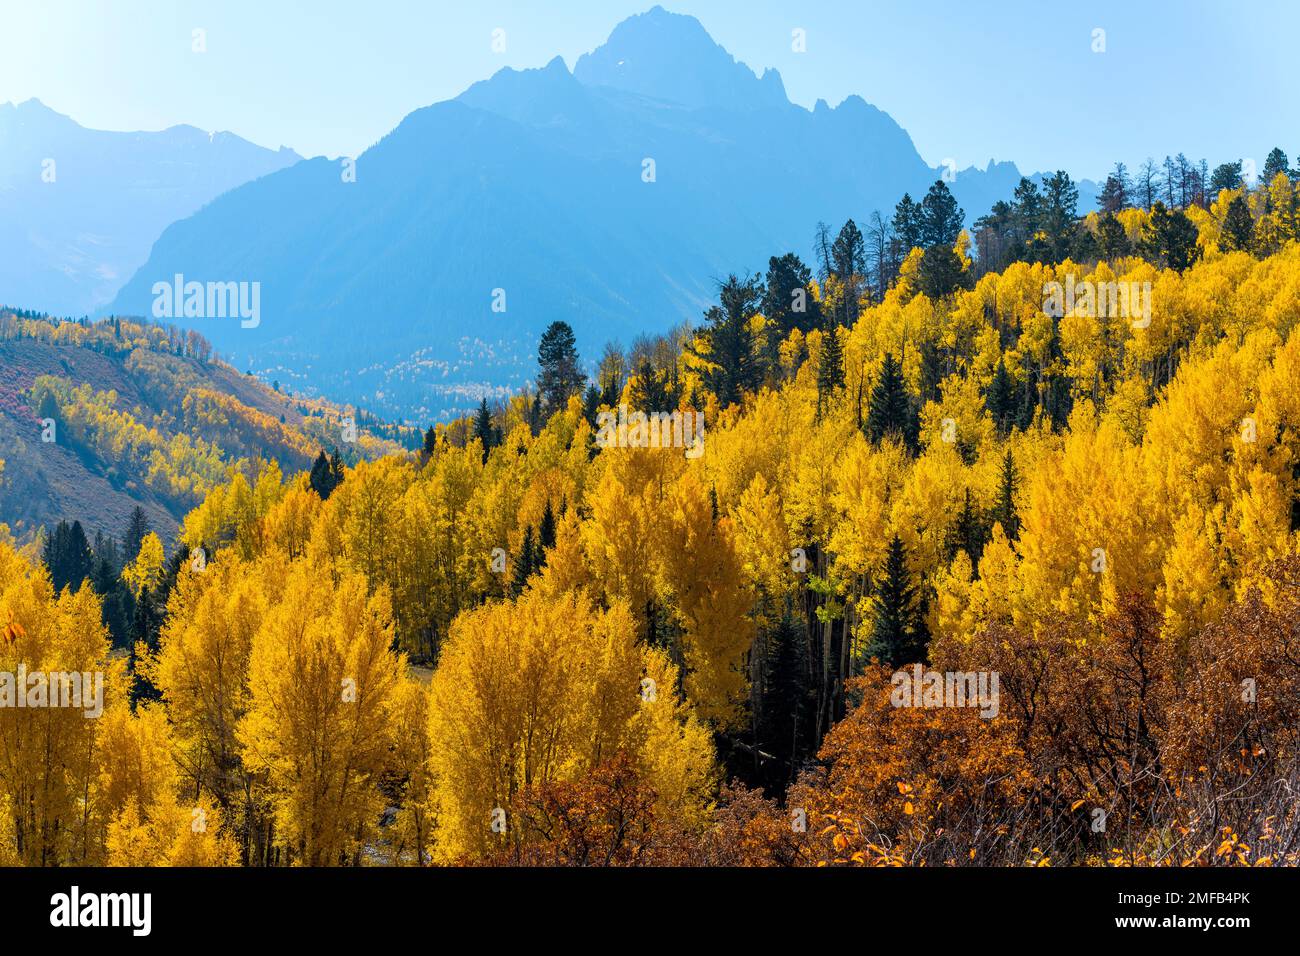 Forêt de montagne d'automne - lumière du soleil d'automne matinale lumineuse qui se trouve sur une forêt de montagne colorée dans la chaîne des Sneffels accidentés, forêt nationale d'Uncompahgre, CO Banque D'Images